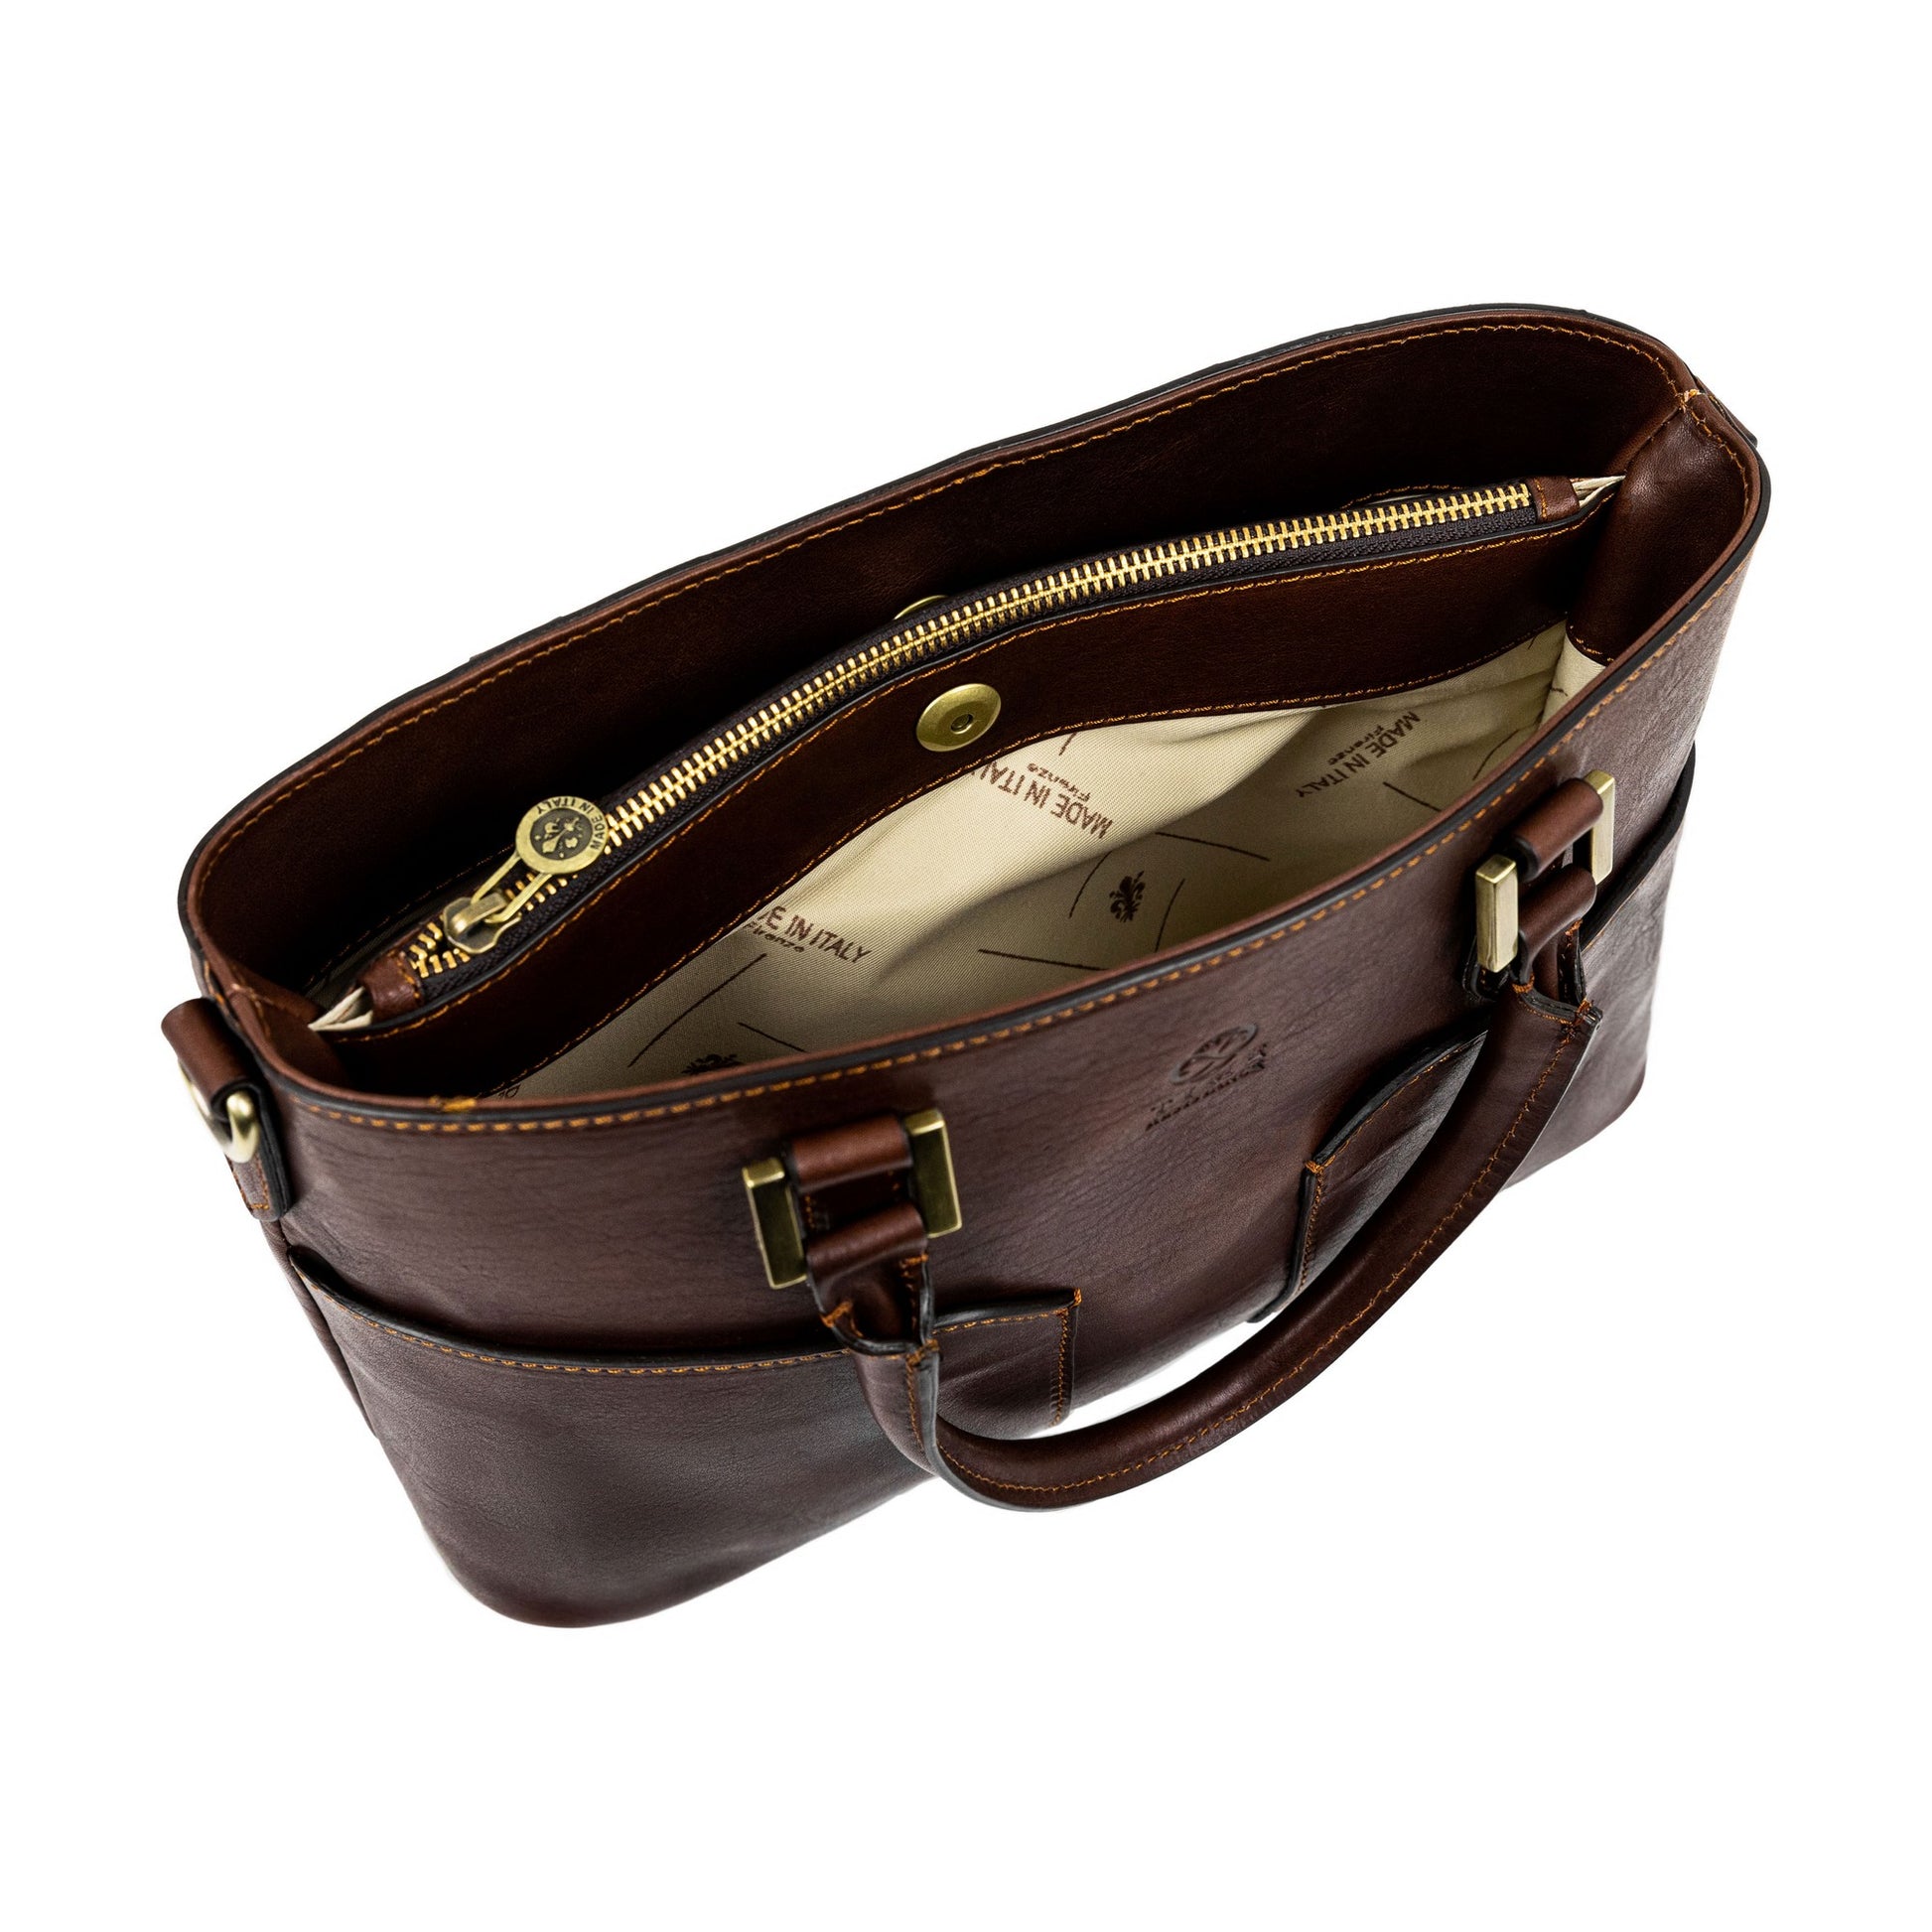 Leather Handbag Shoulder Bag - Camilla  Time Resistance   